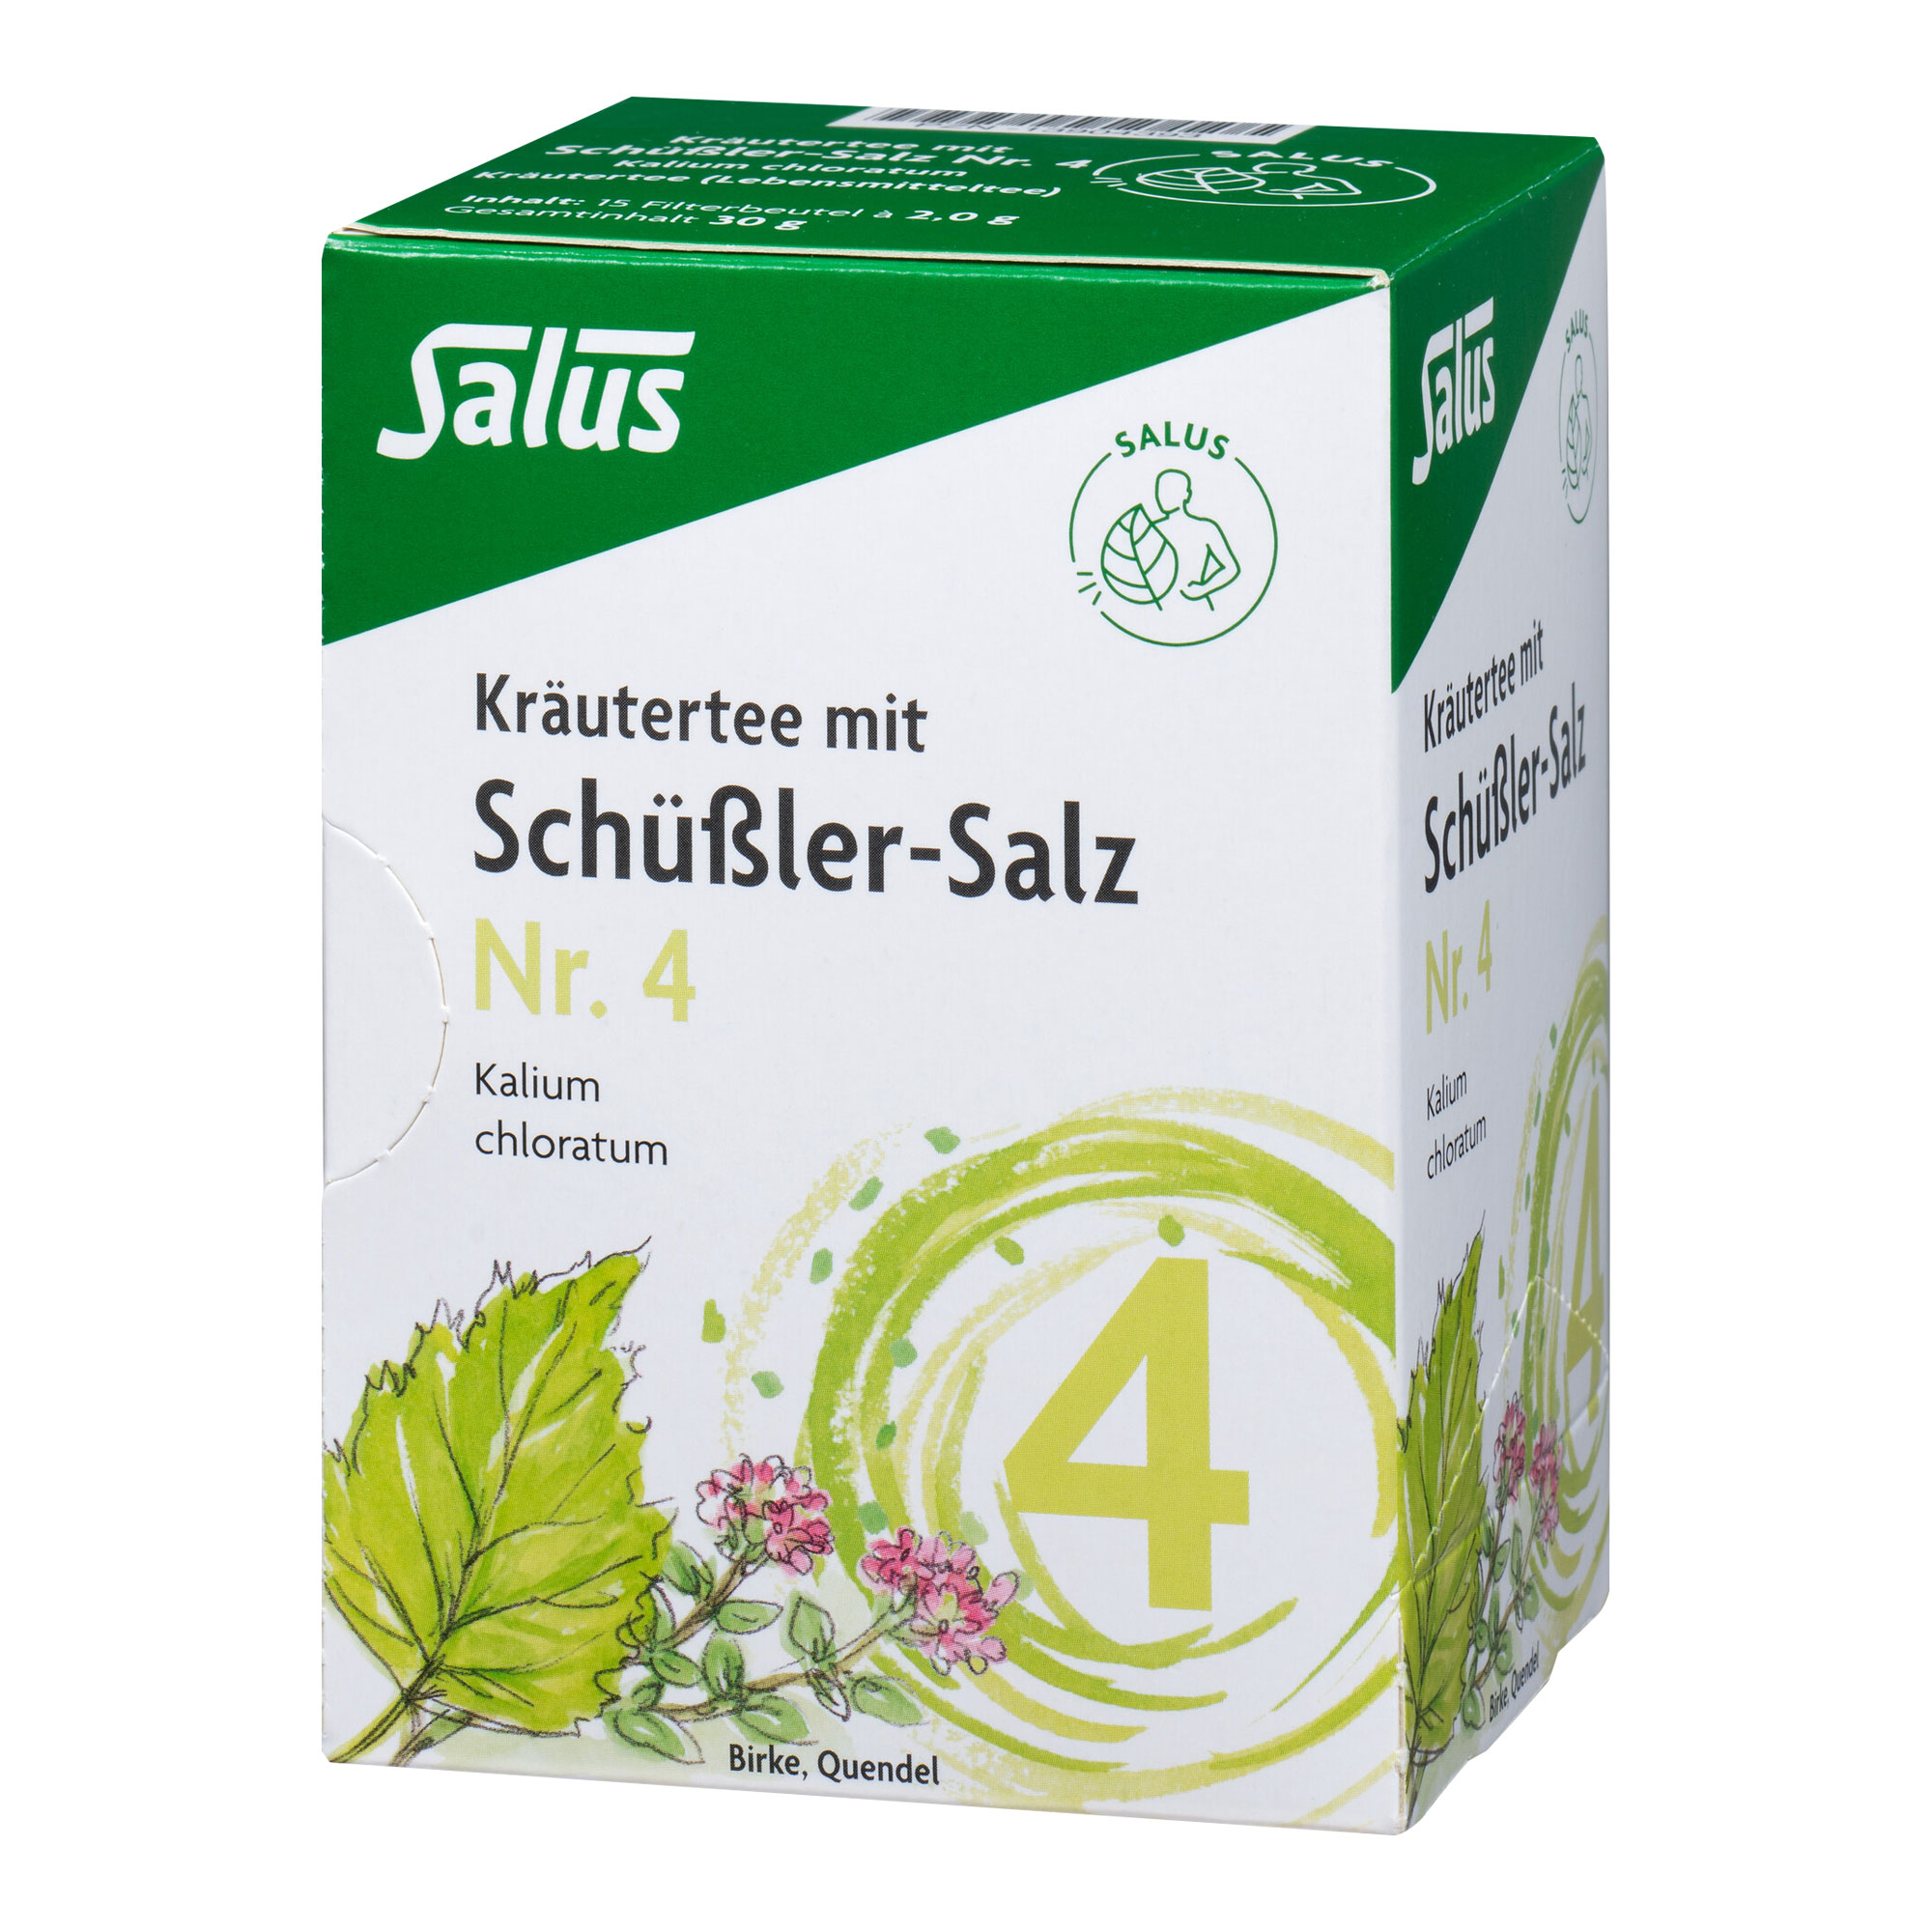 Kräutertee mit Birke und Quendel. Mit Schüßler Salz Nr 4. - Kalium chloratum.